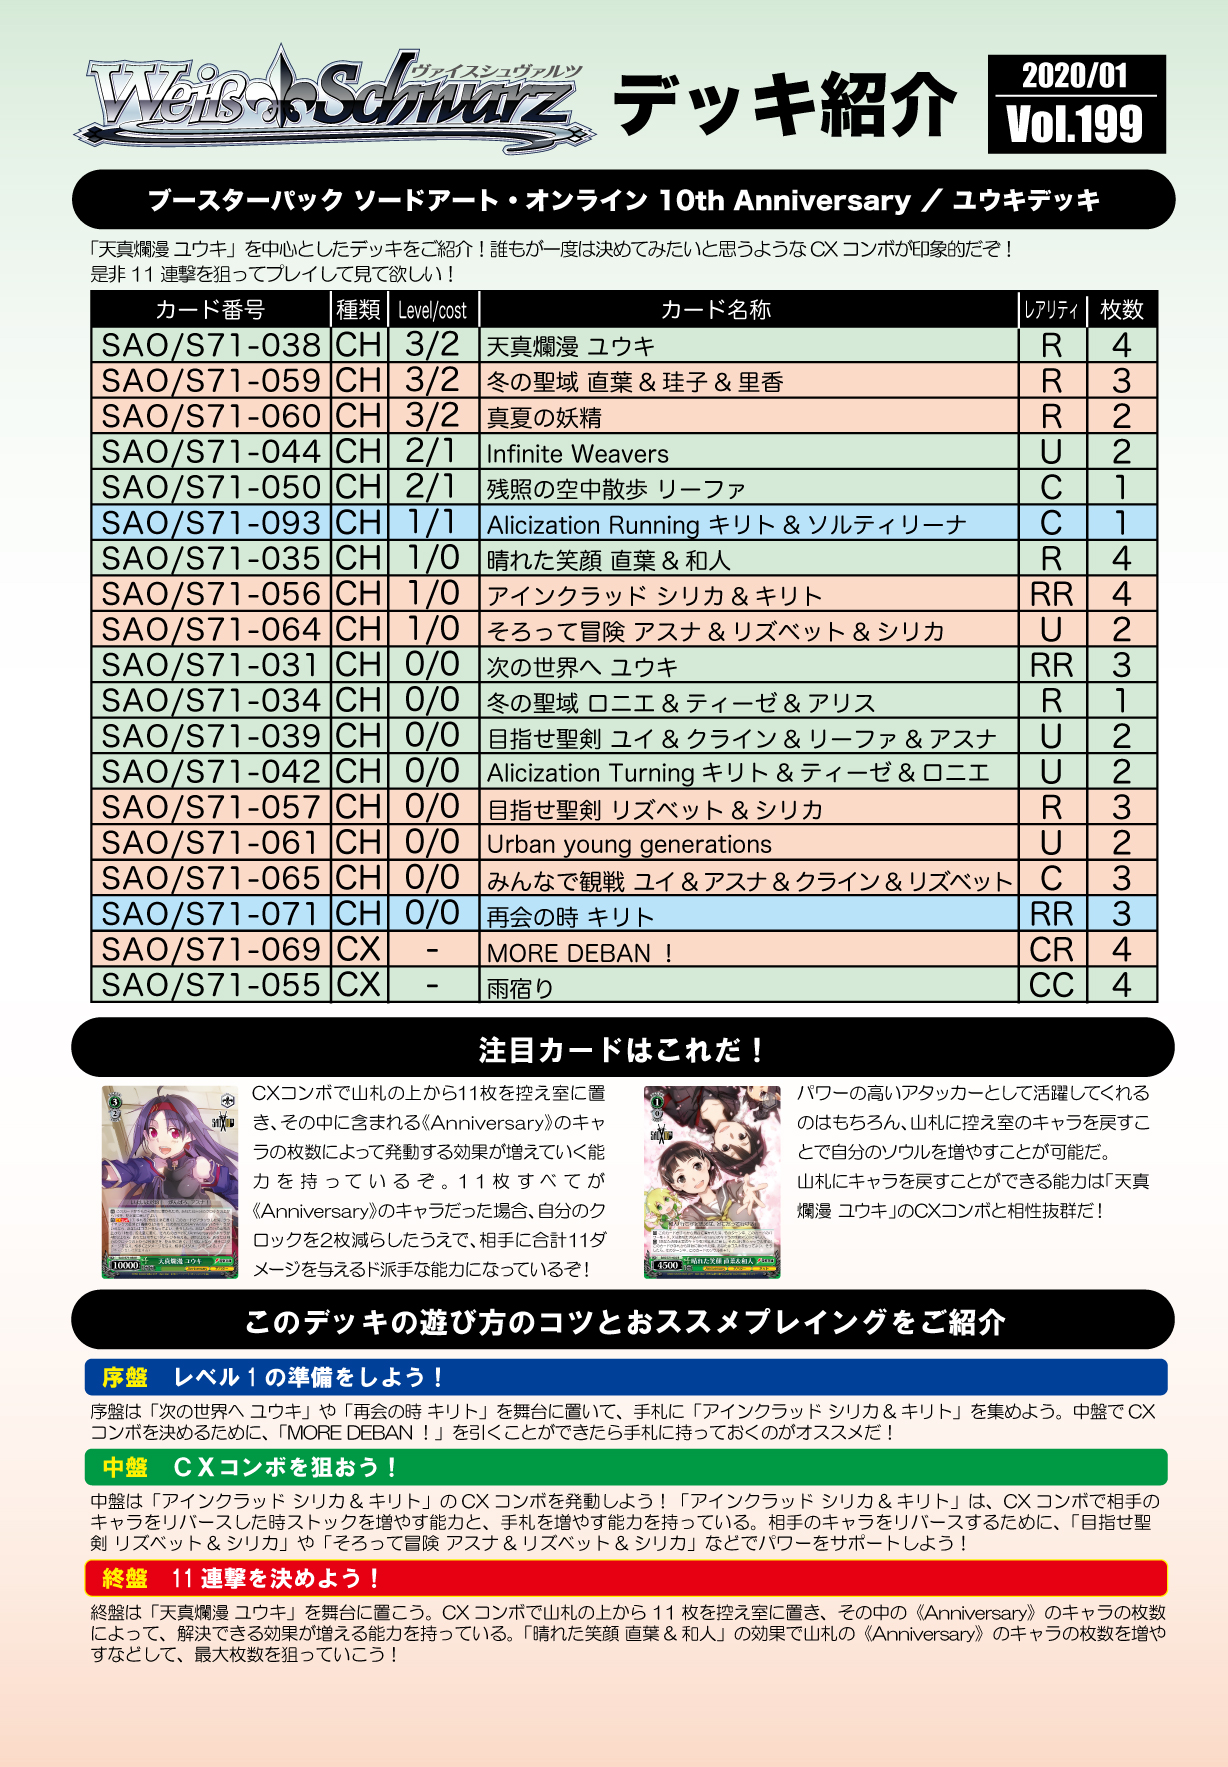 Vol.199 ソードアート・オンライン 10th Anniversary「ユウキ」デッキ 